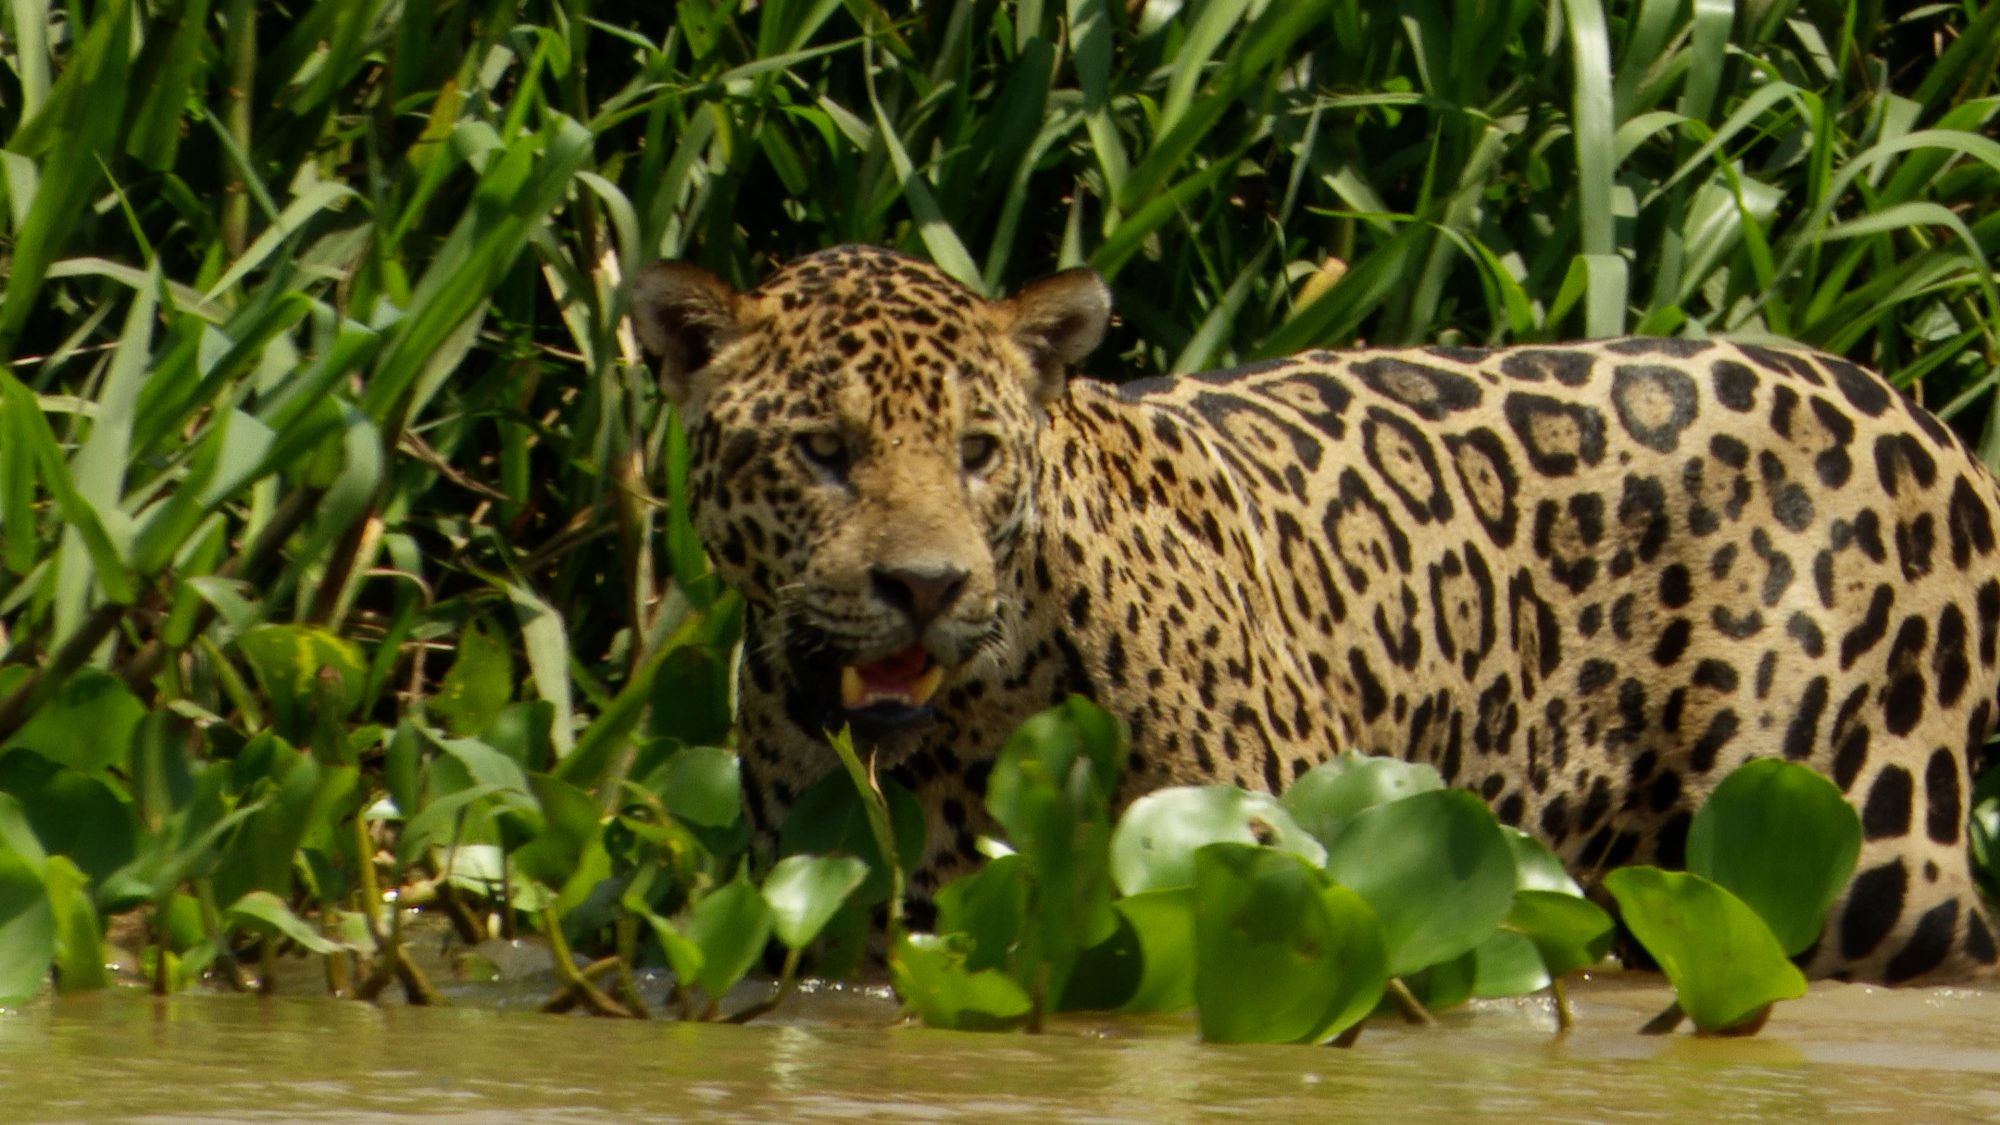 Jaguar close up! – Pantanal, Brazil 2019